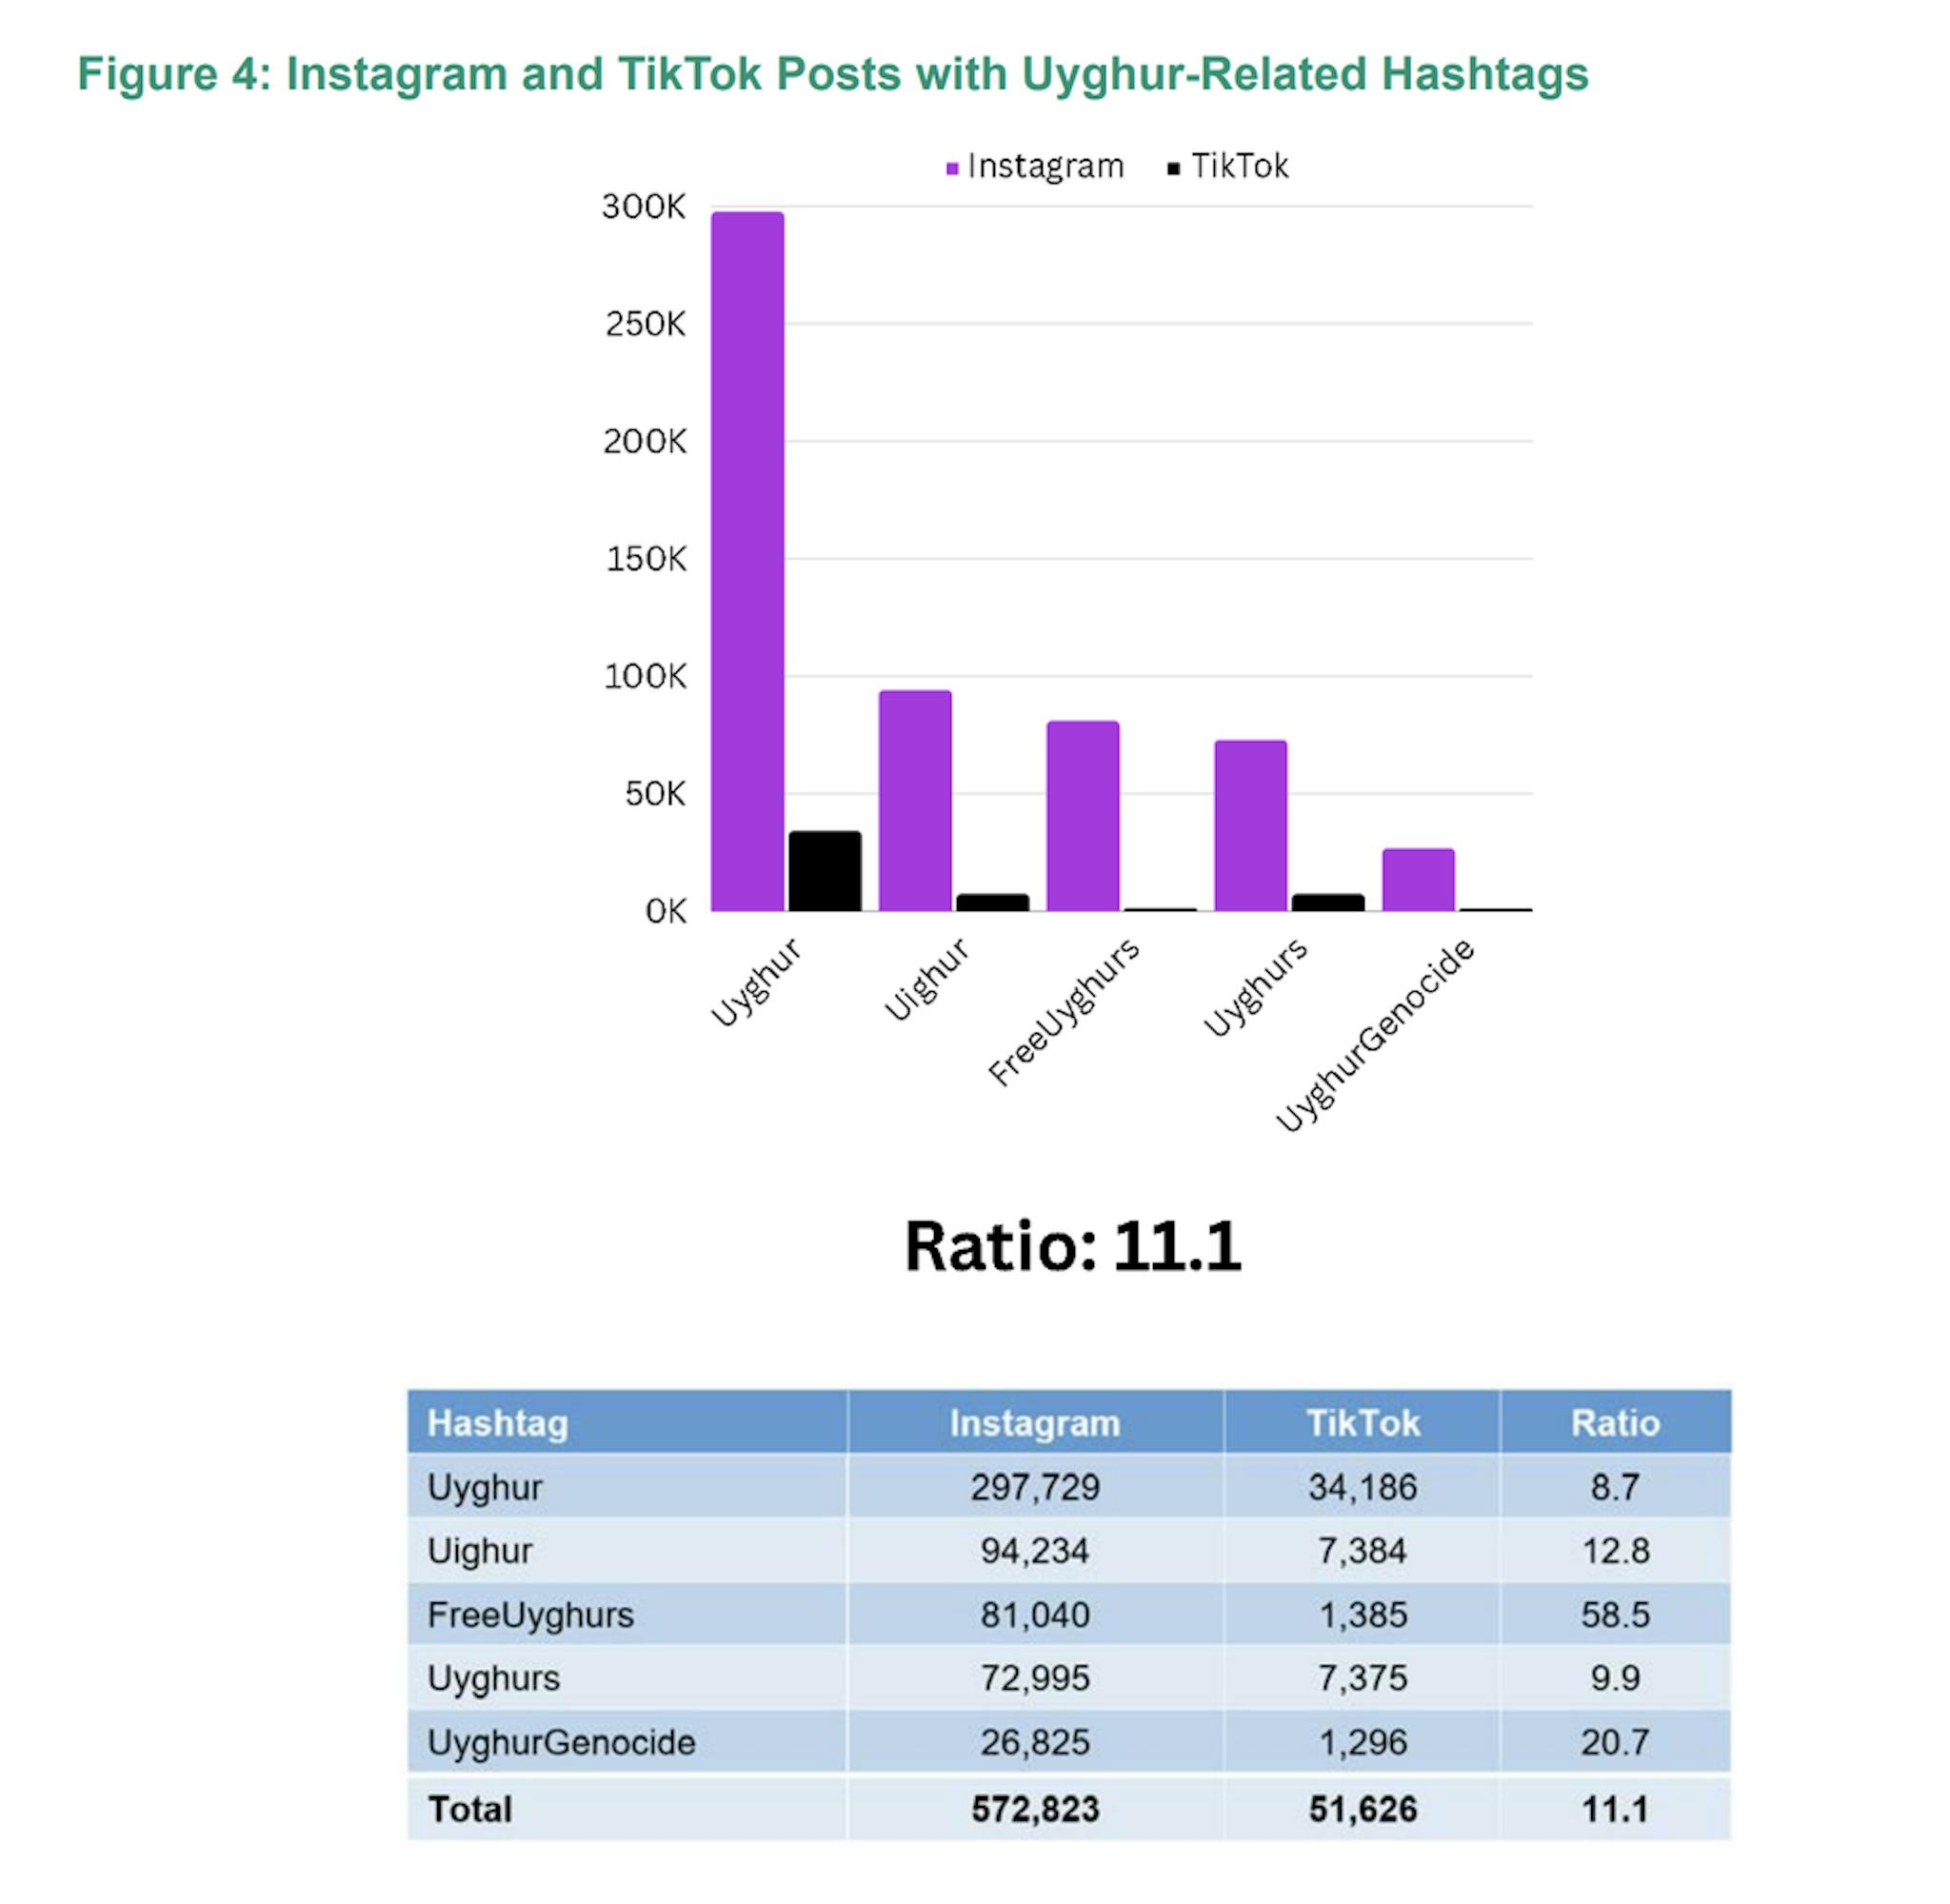 A proporção total de postagens com hashtags relacionadas aos uigures entre as duas plataformas é de 11,1. A hashtag com maior proporção é freeuyghurs. No entanto, para temas sensíveis ao Governo Chinês, os rácios foram significativamente mais elevados (>10:1), sugerindo potencial manipulação na promoção ou supressão de conteúdos alinhados com os interesses do Governo Chinês.